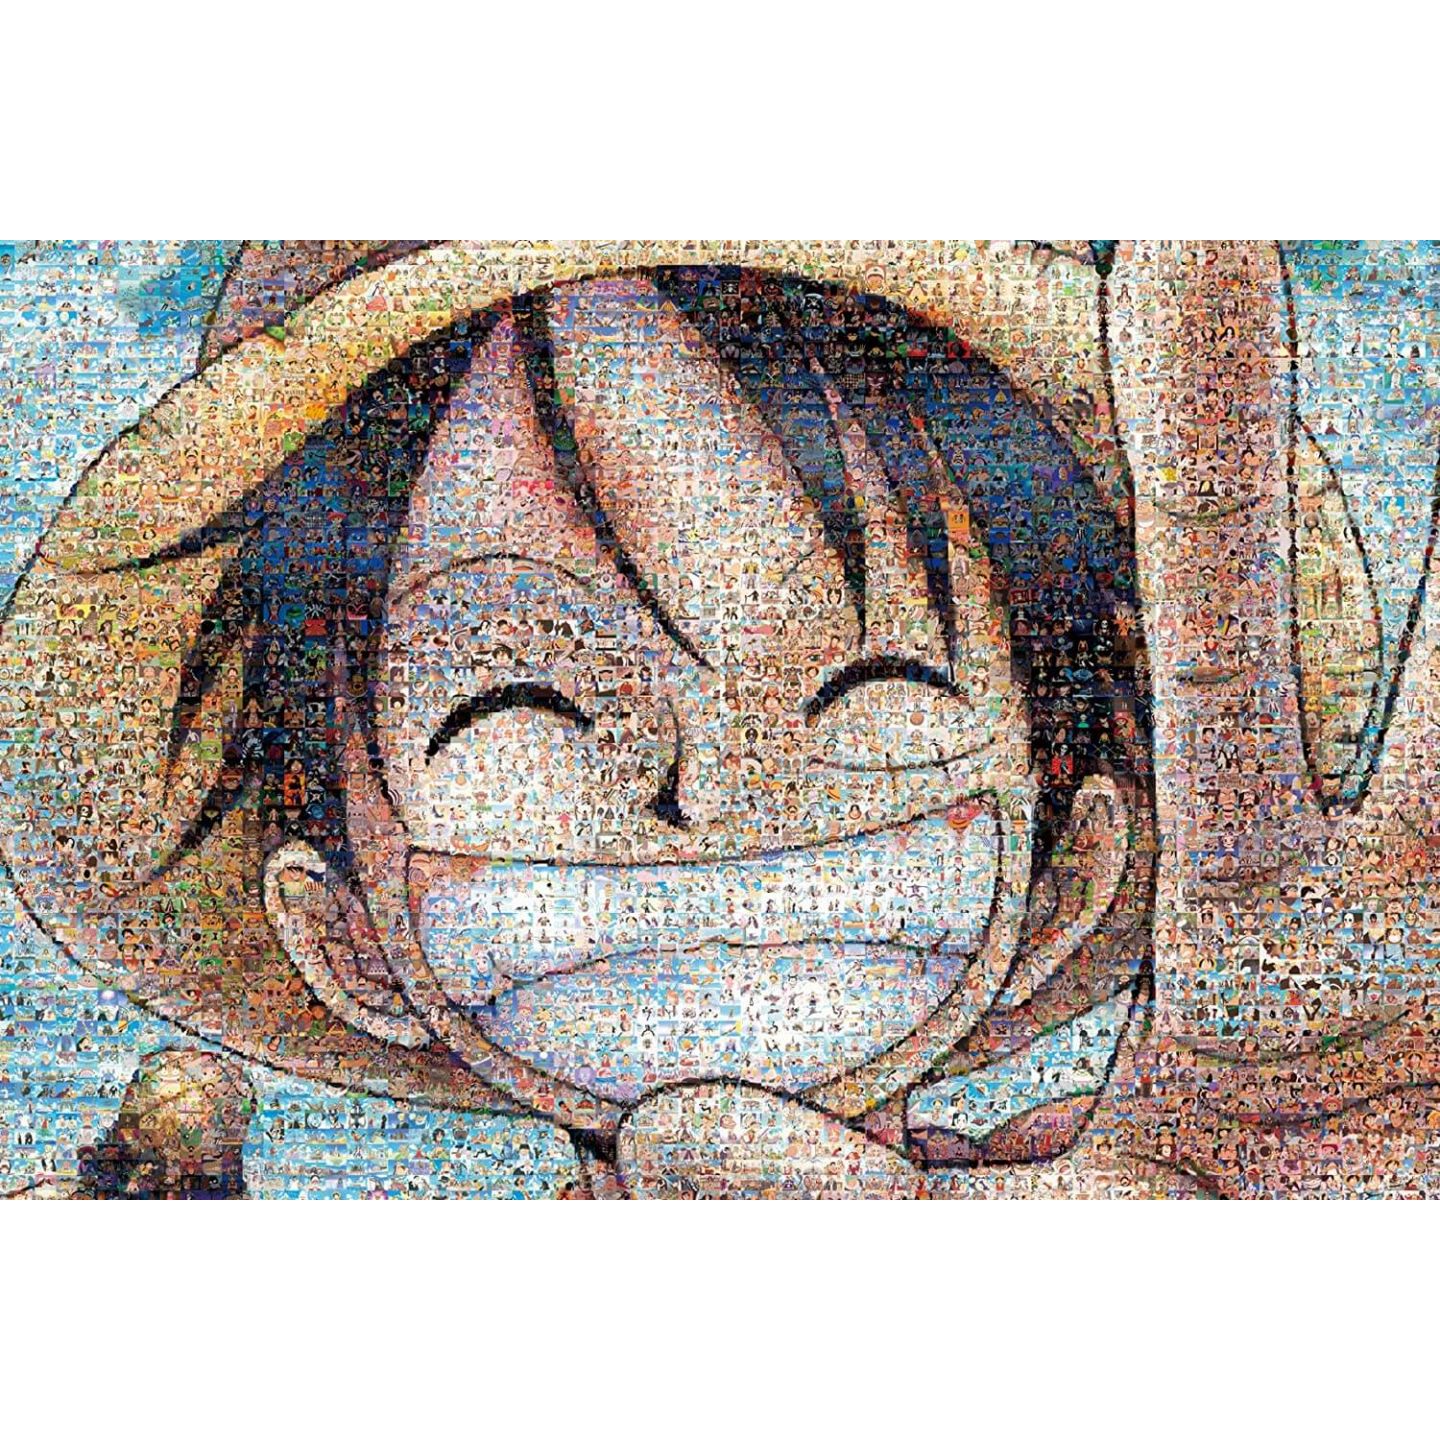 Puzzle 1000 pièces : One Piece